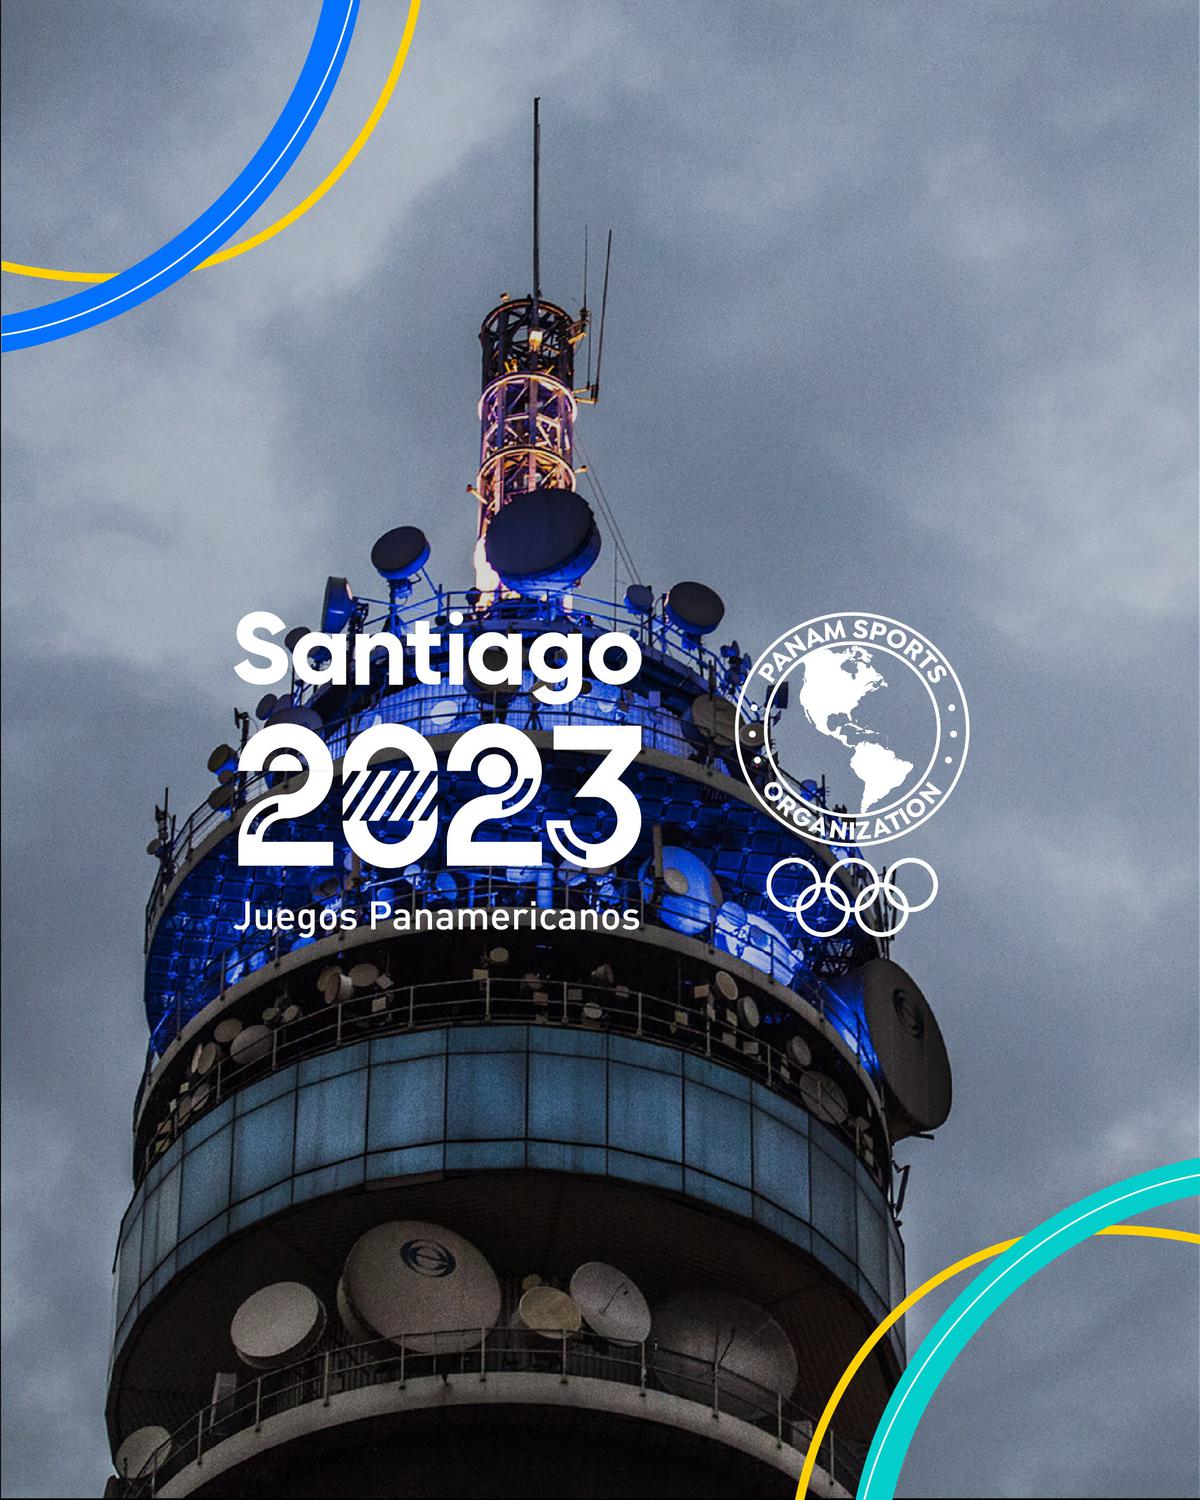 Twitter @santiago2023 | Próximos juegos panamericanos en Santiago de Chile 2023.